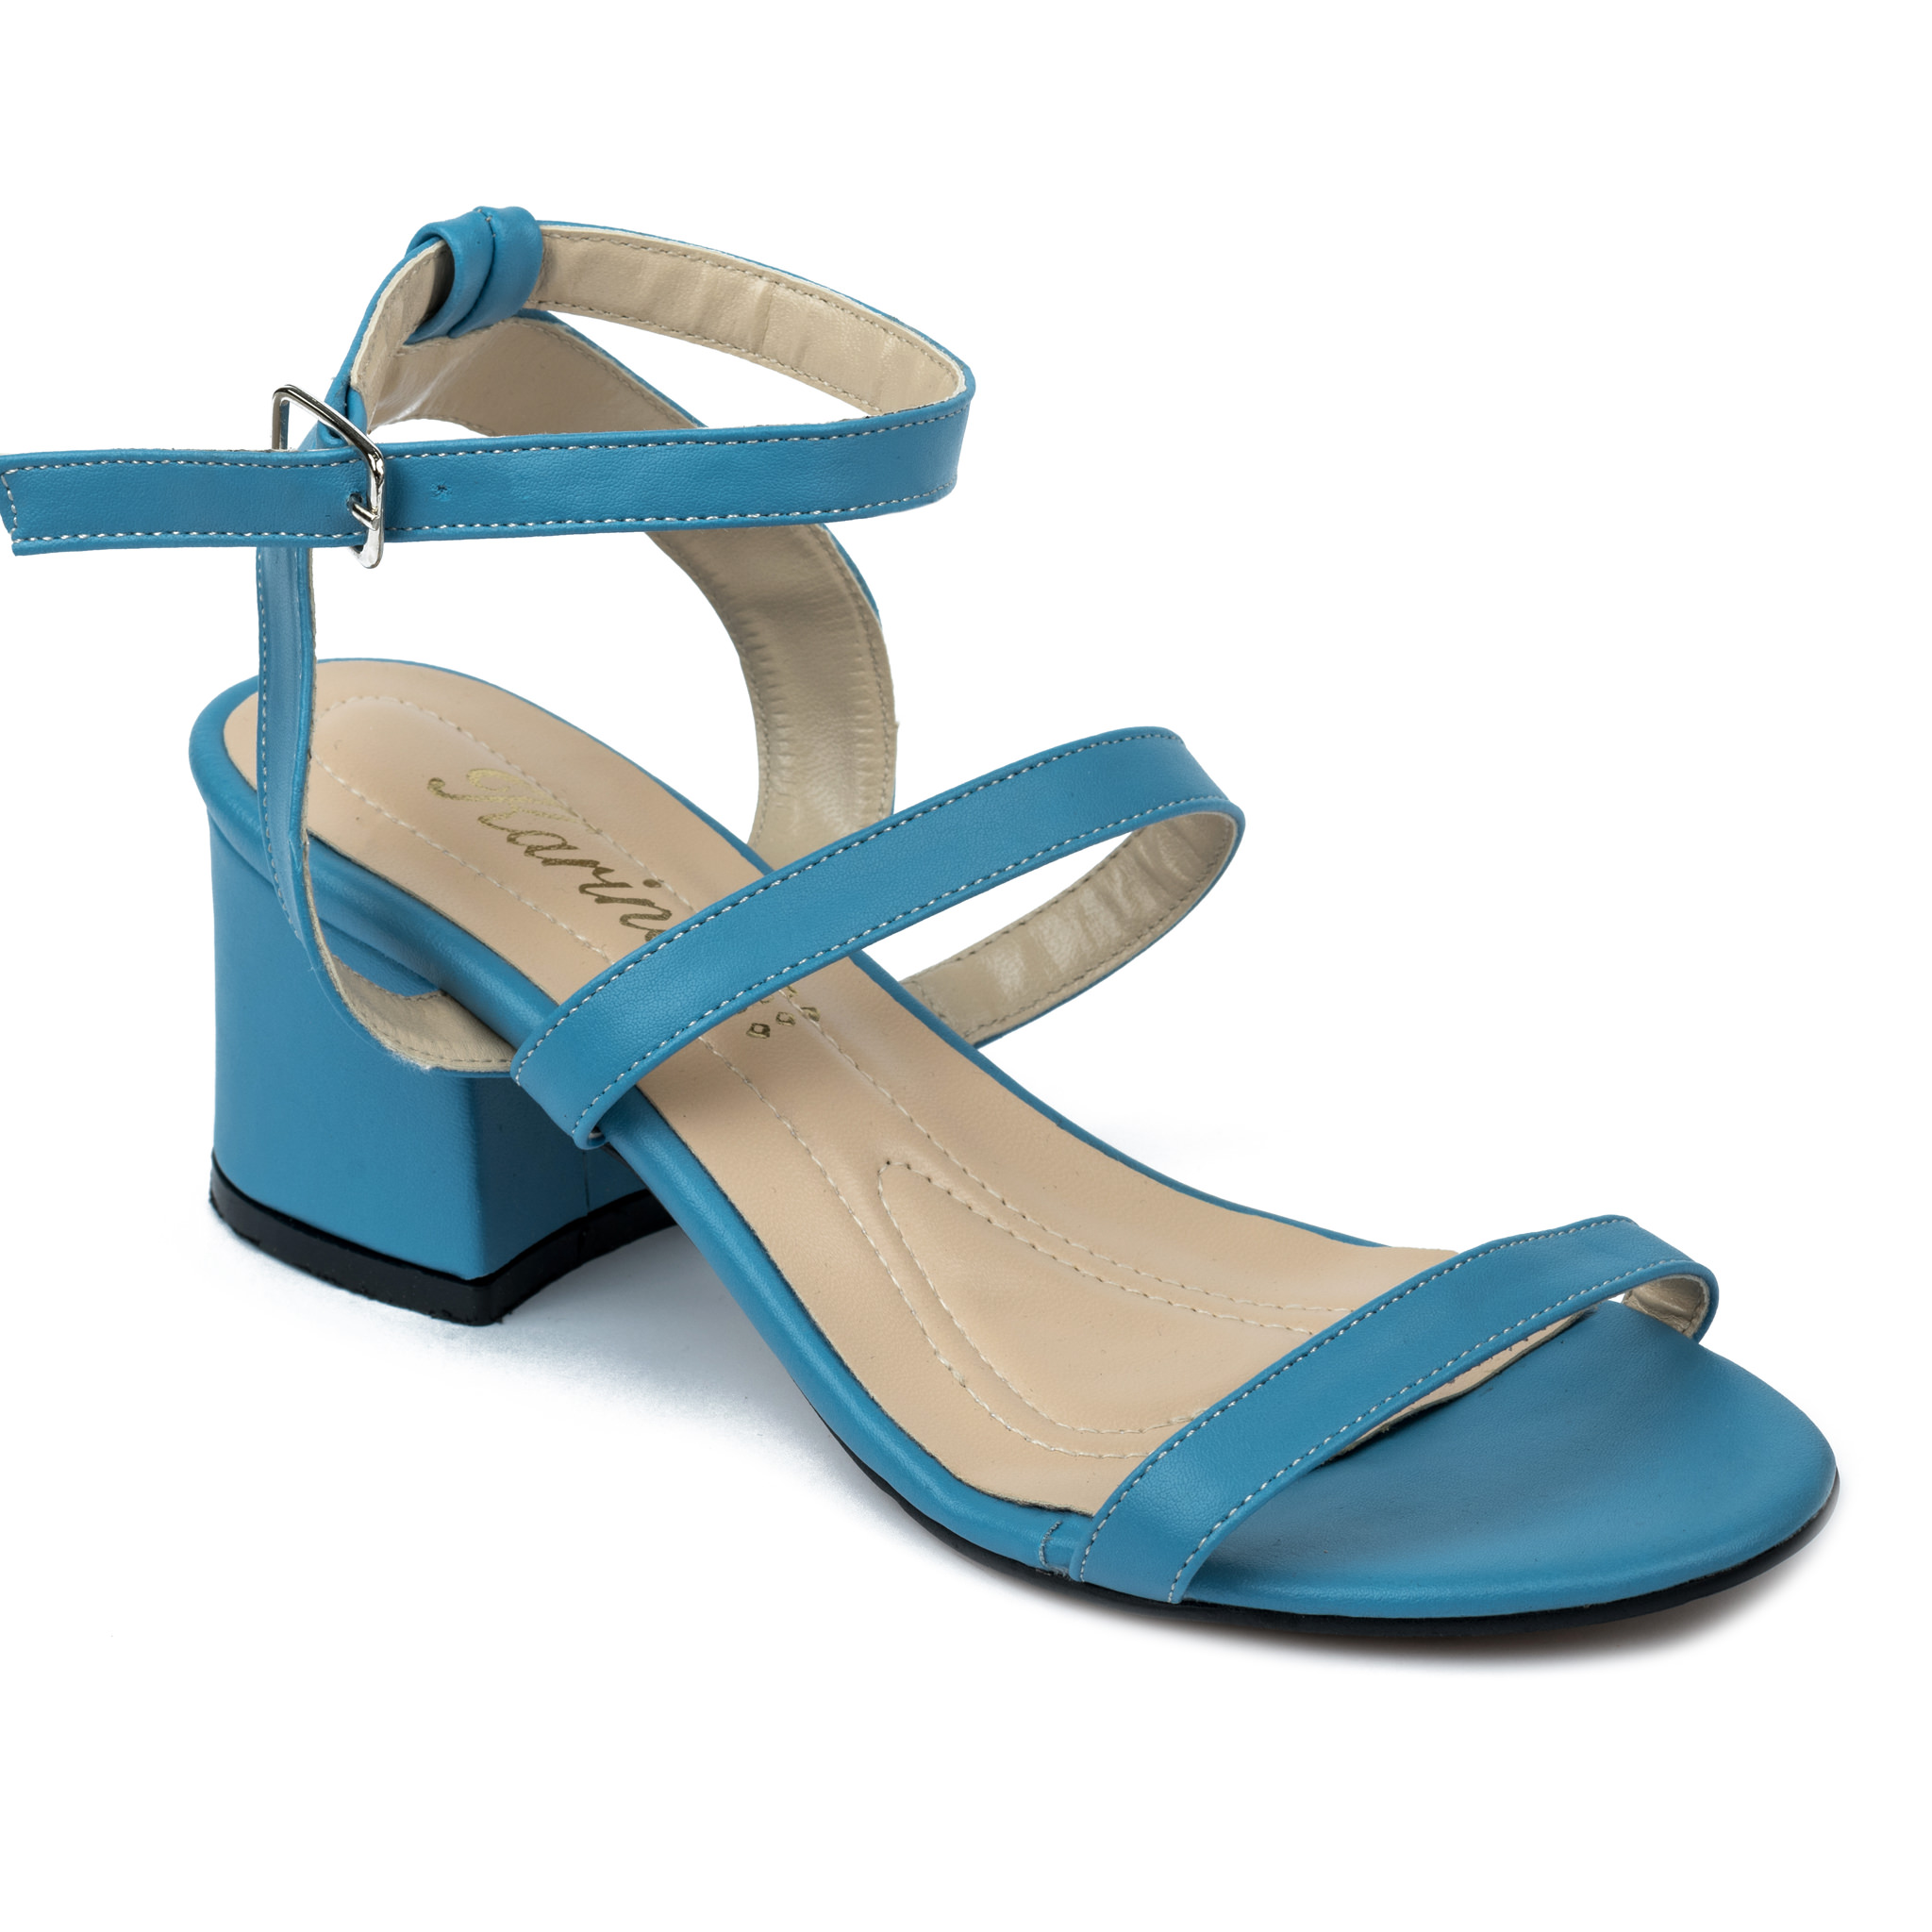 Women sandals A613 - BLUE